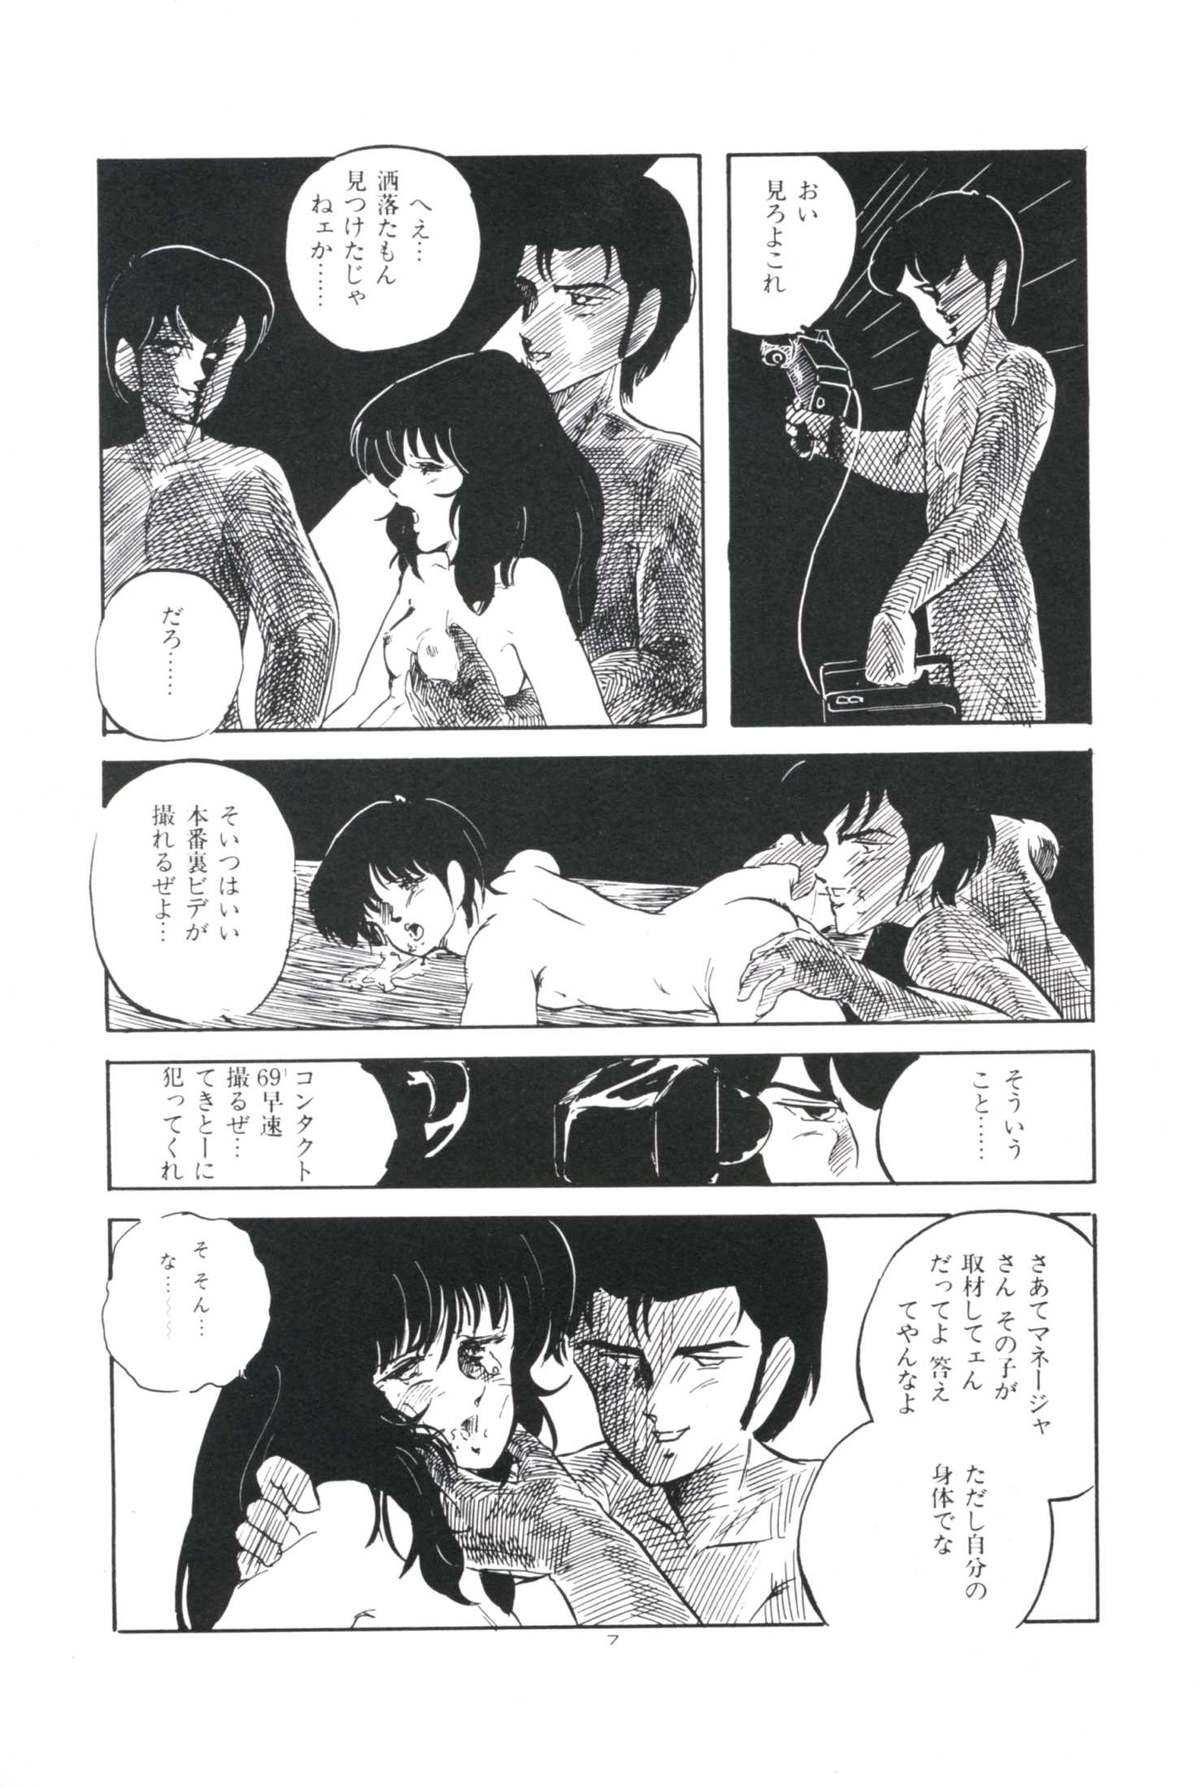 Pussylicking Ikenai Yuugi Humiliation - Page 11